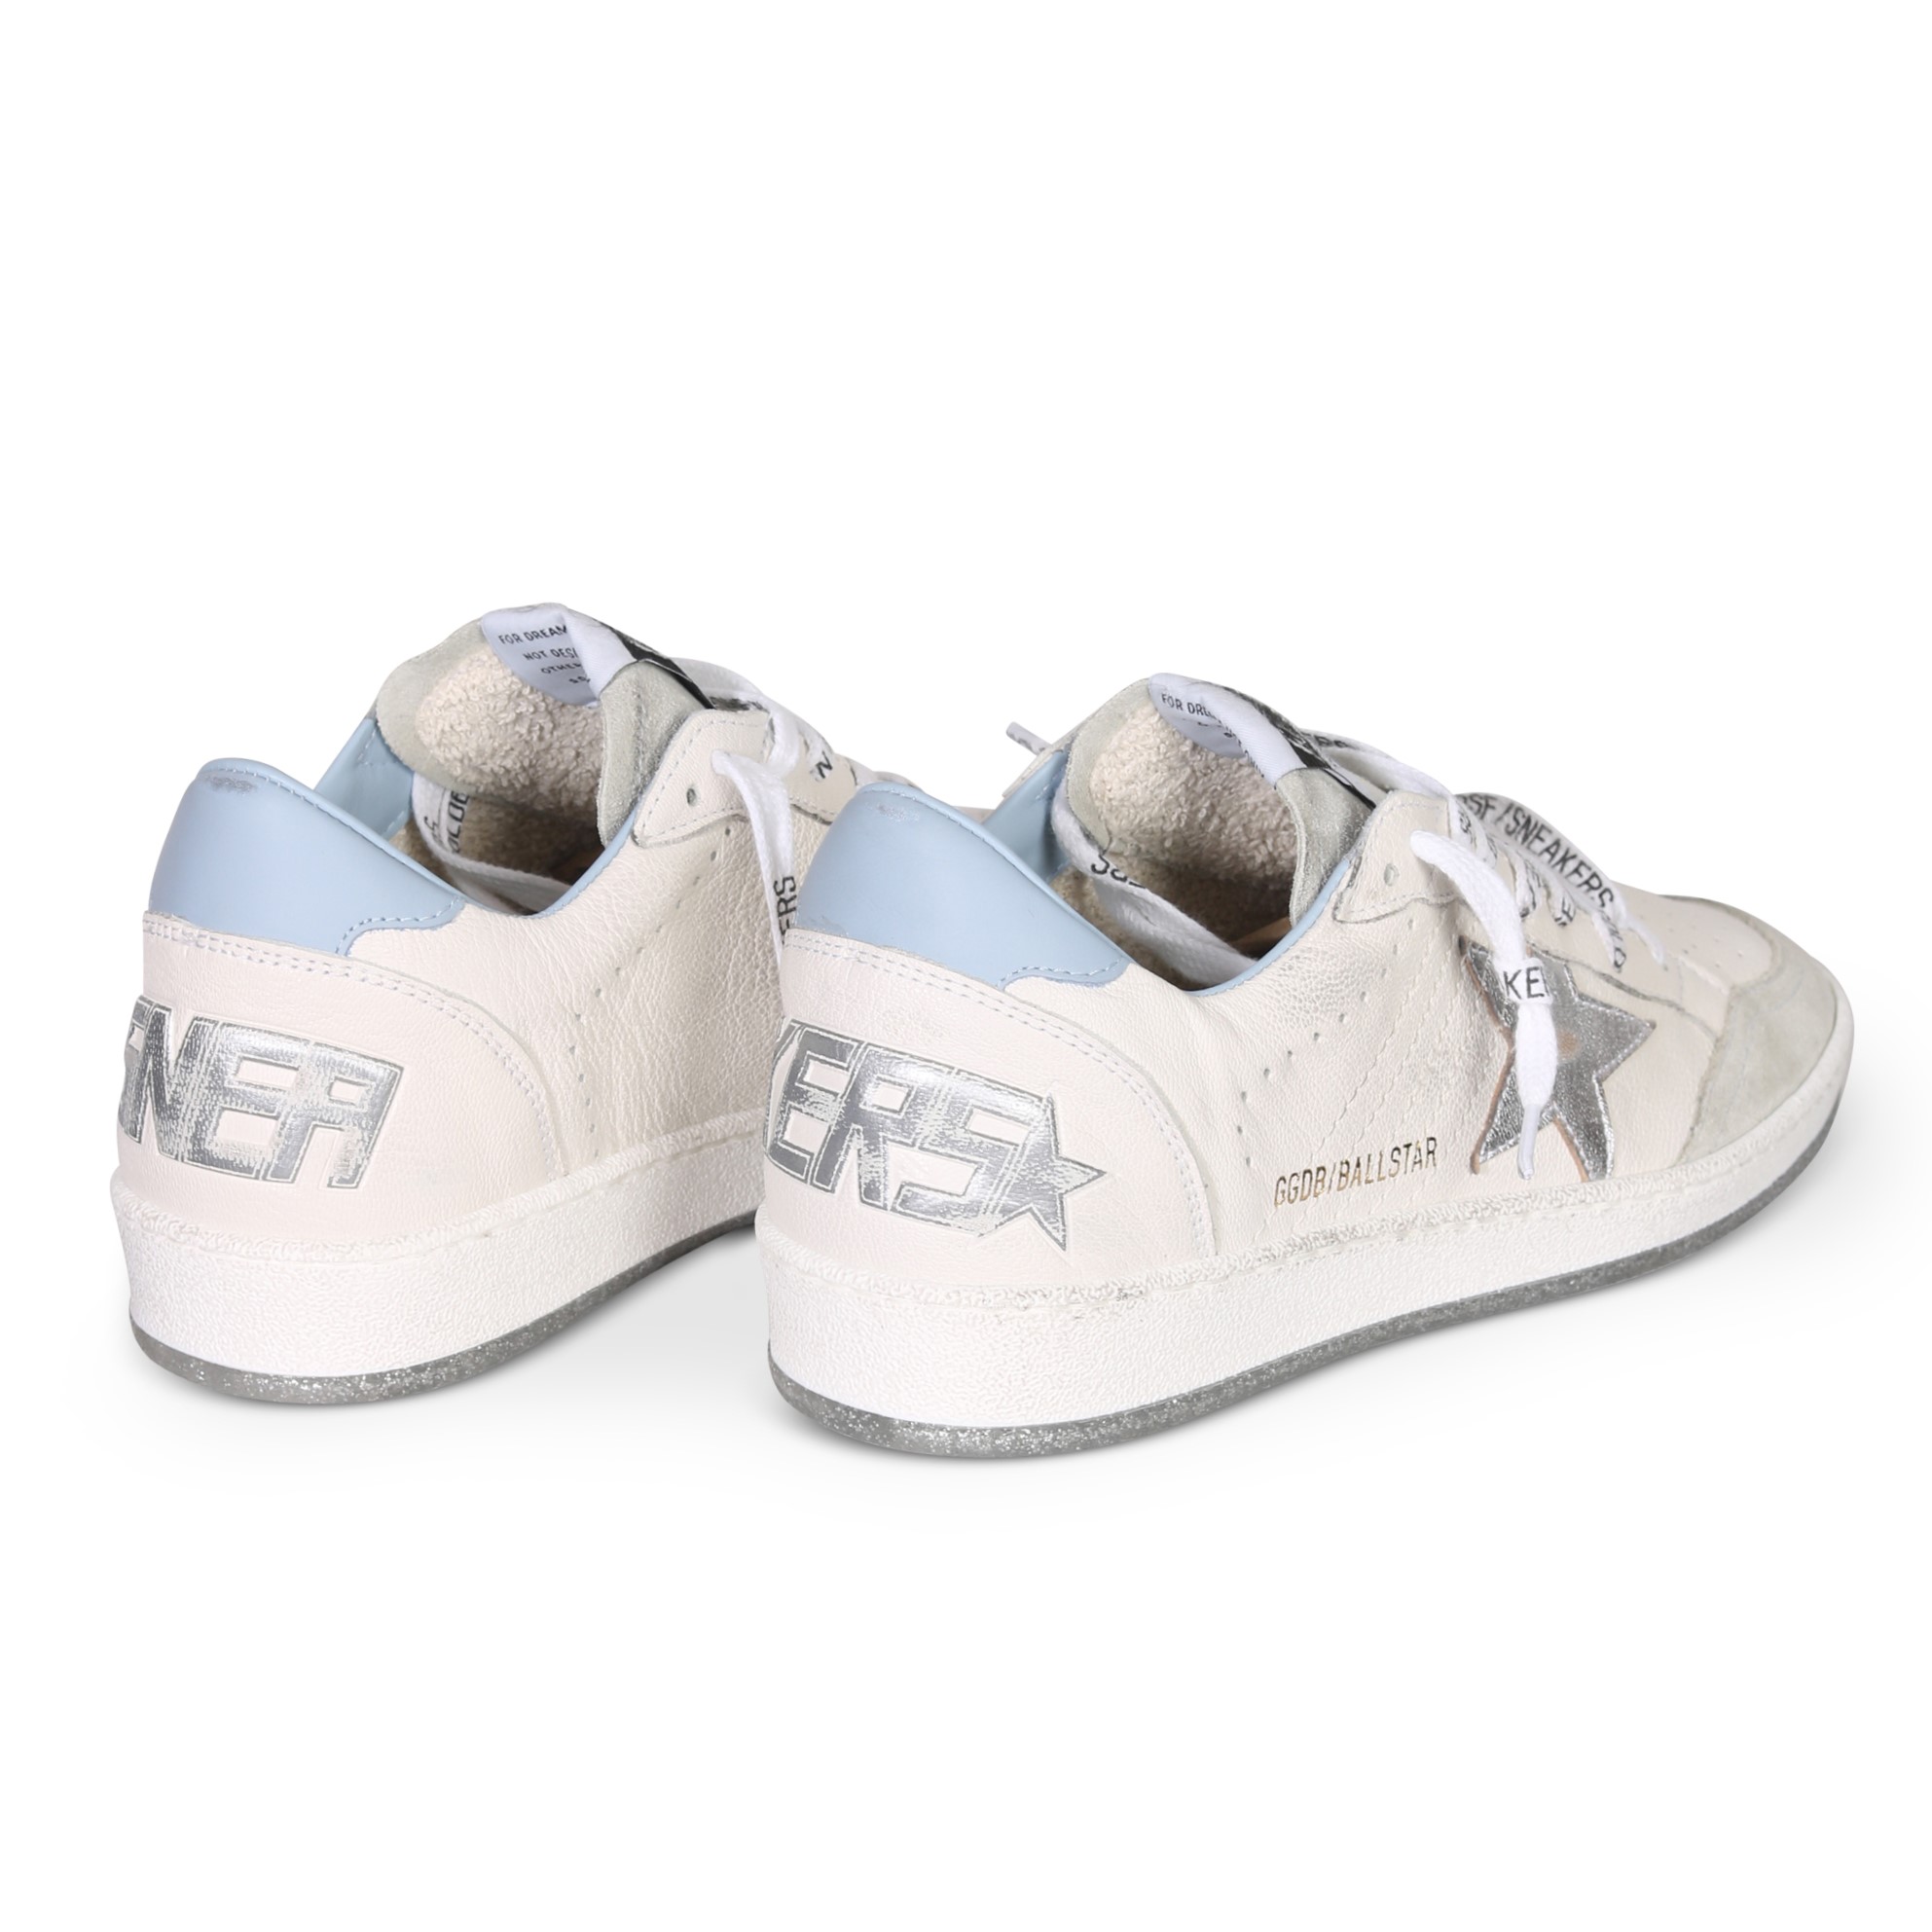 GOLDEN GOOSE Sneaker Ballstar in White/Light Blue/Silver 40